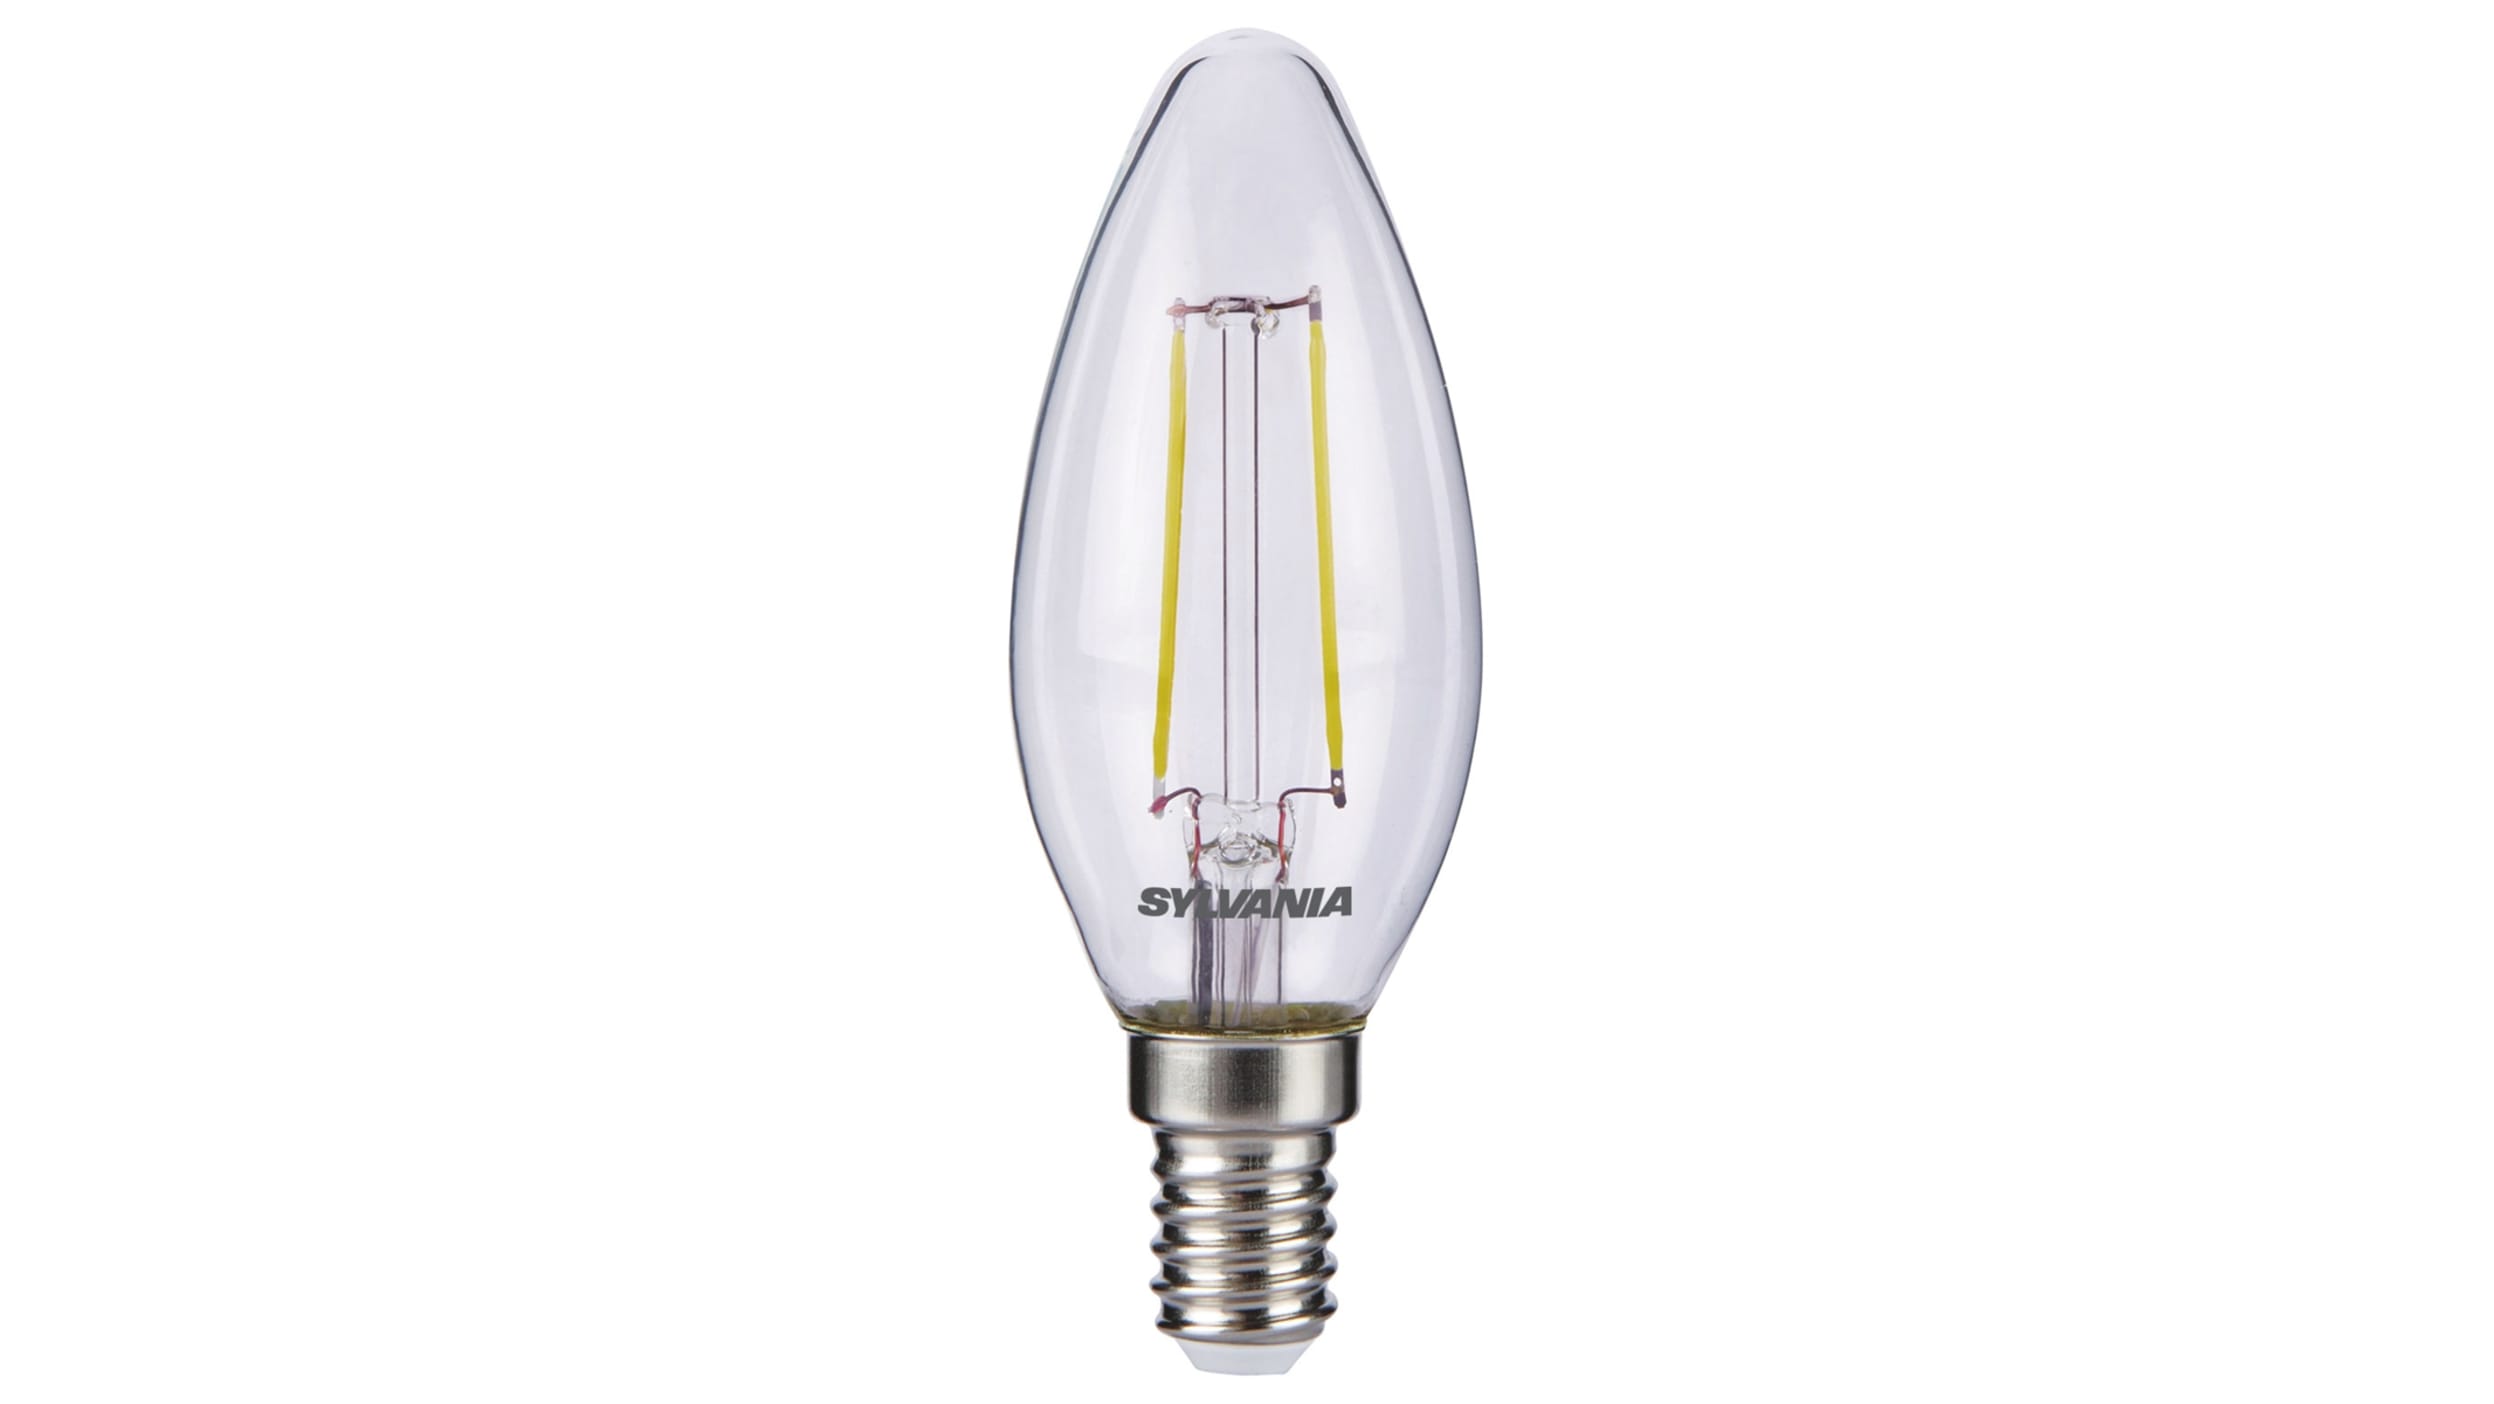  LUHMQ Bombillas LED E14, paquete de 3 bombillas E14 con base de  tornillo europea para lámpara de vela de ventana eléctrica, bombilla de  refrigerador E14, bombilla de horno, equivalente a 7